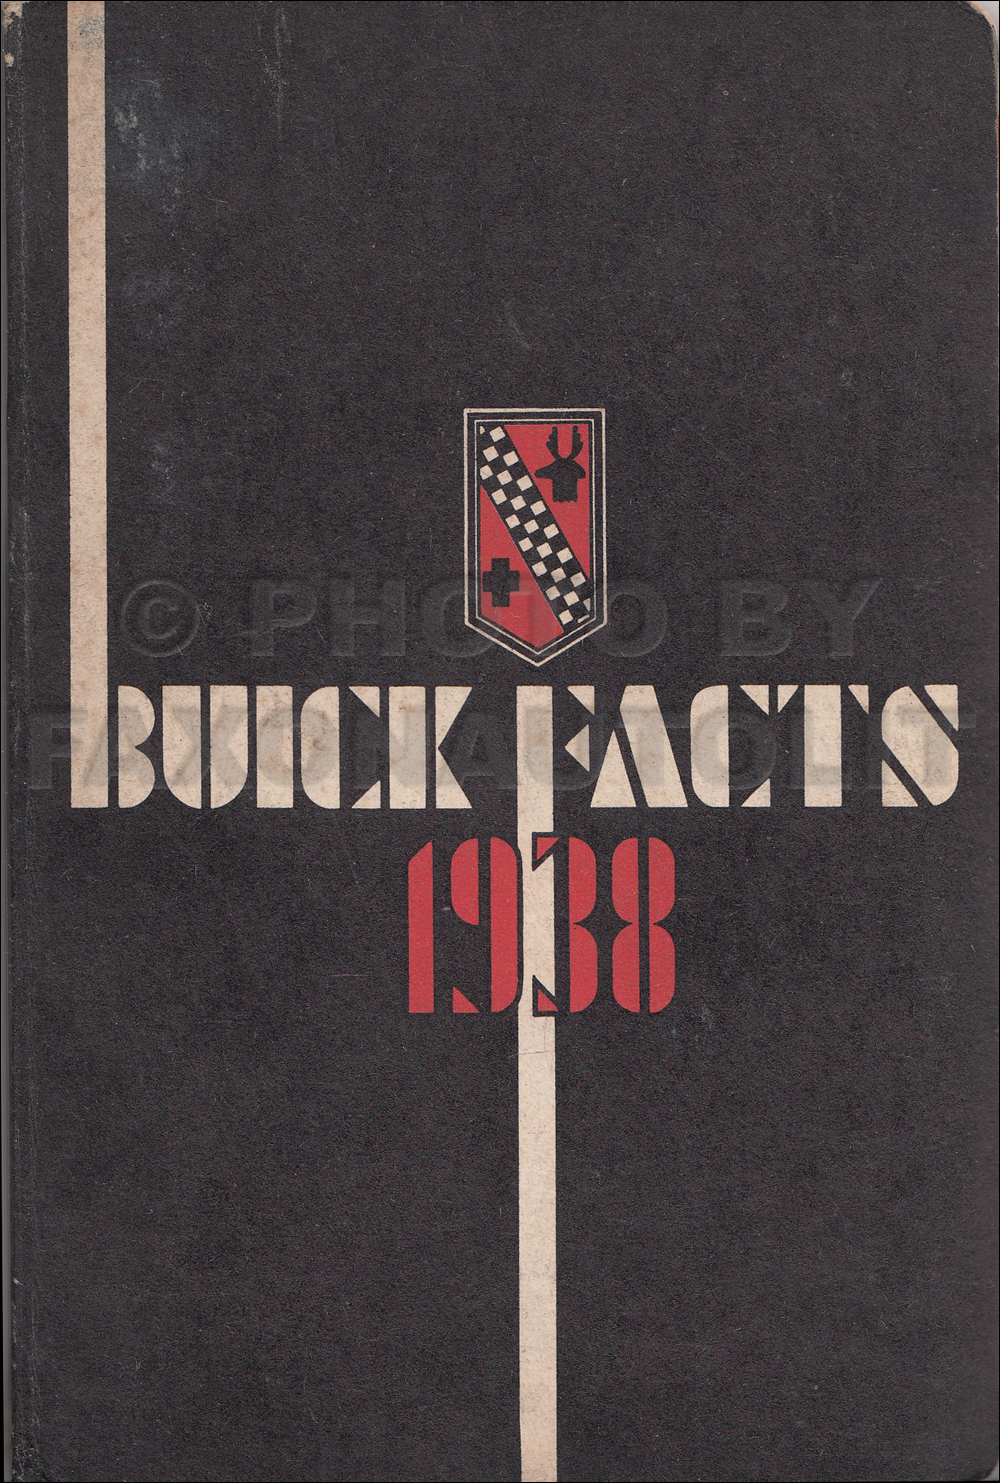 1938 Buick Facts Book Original